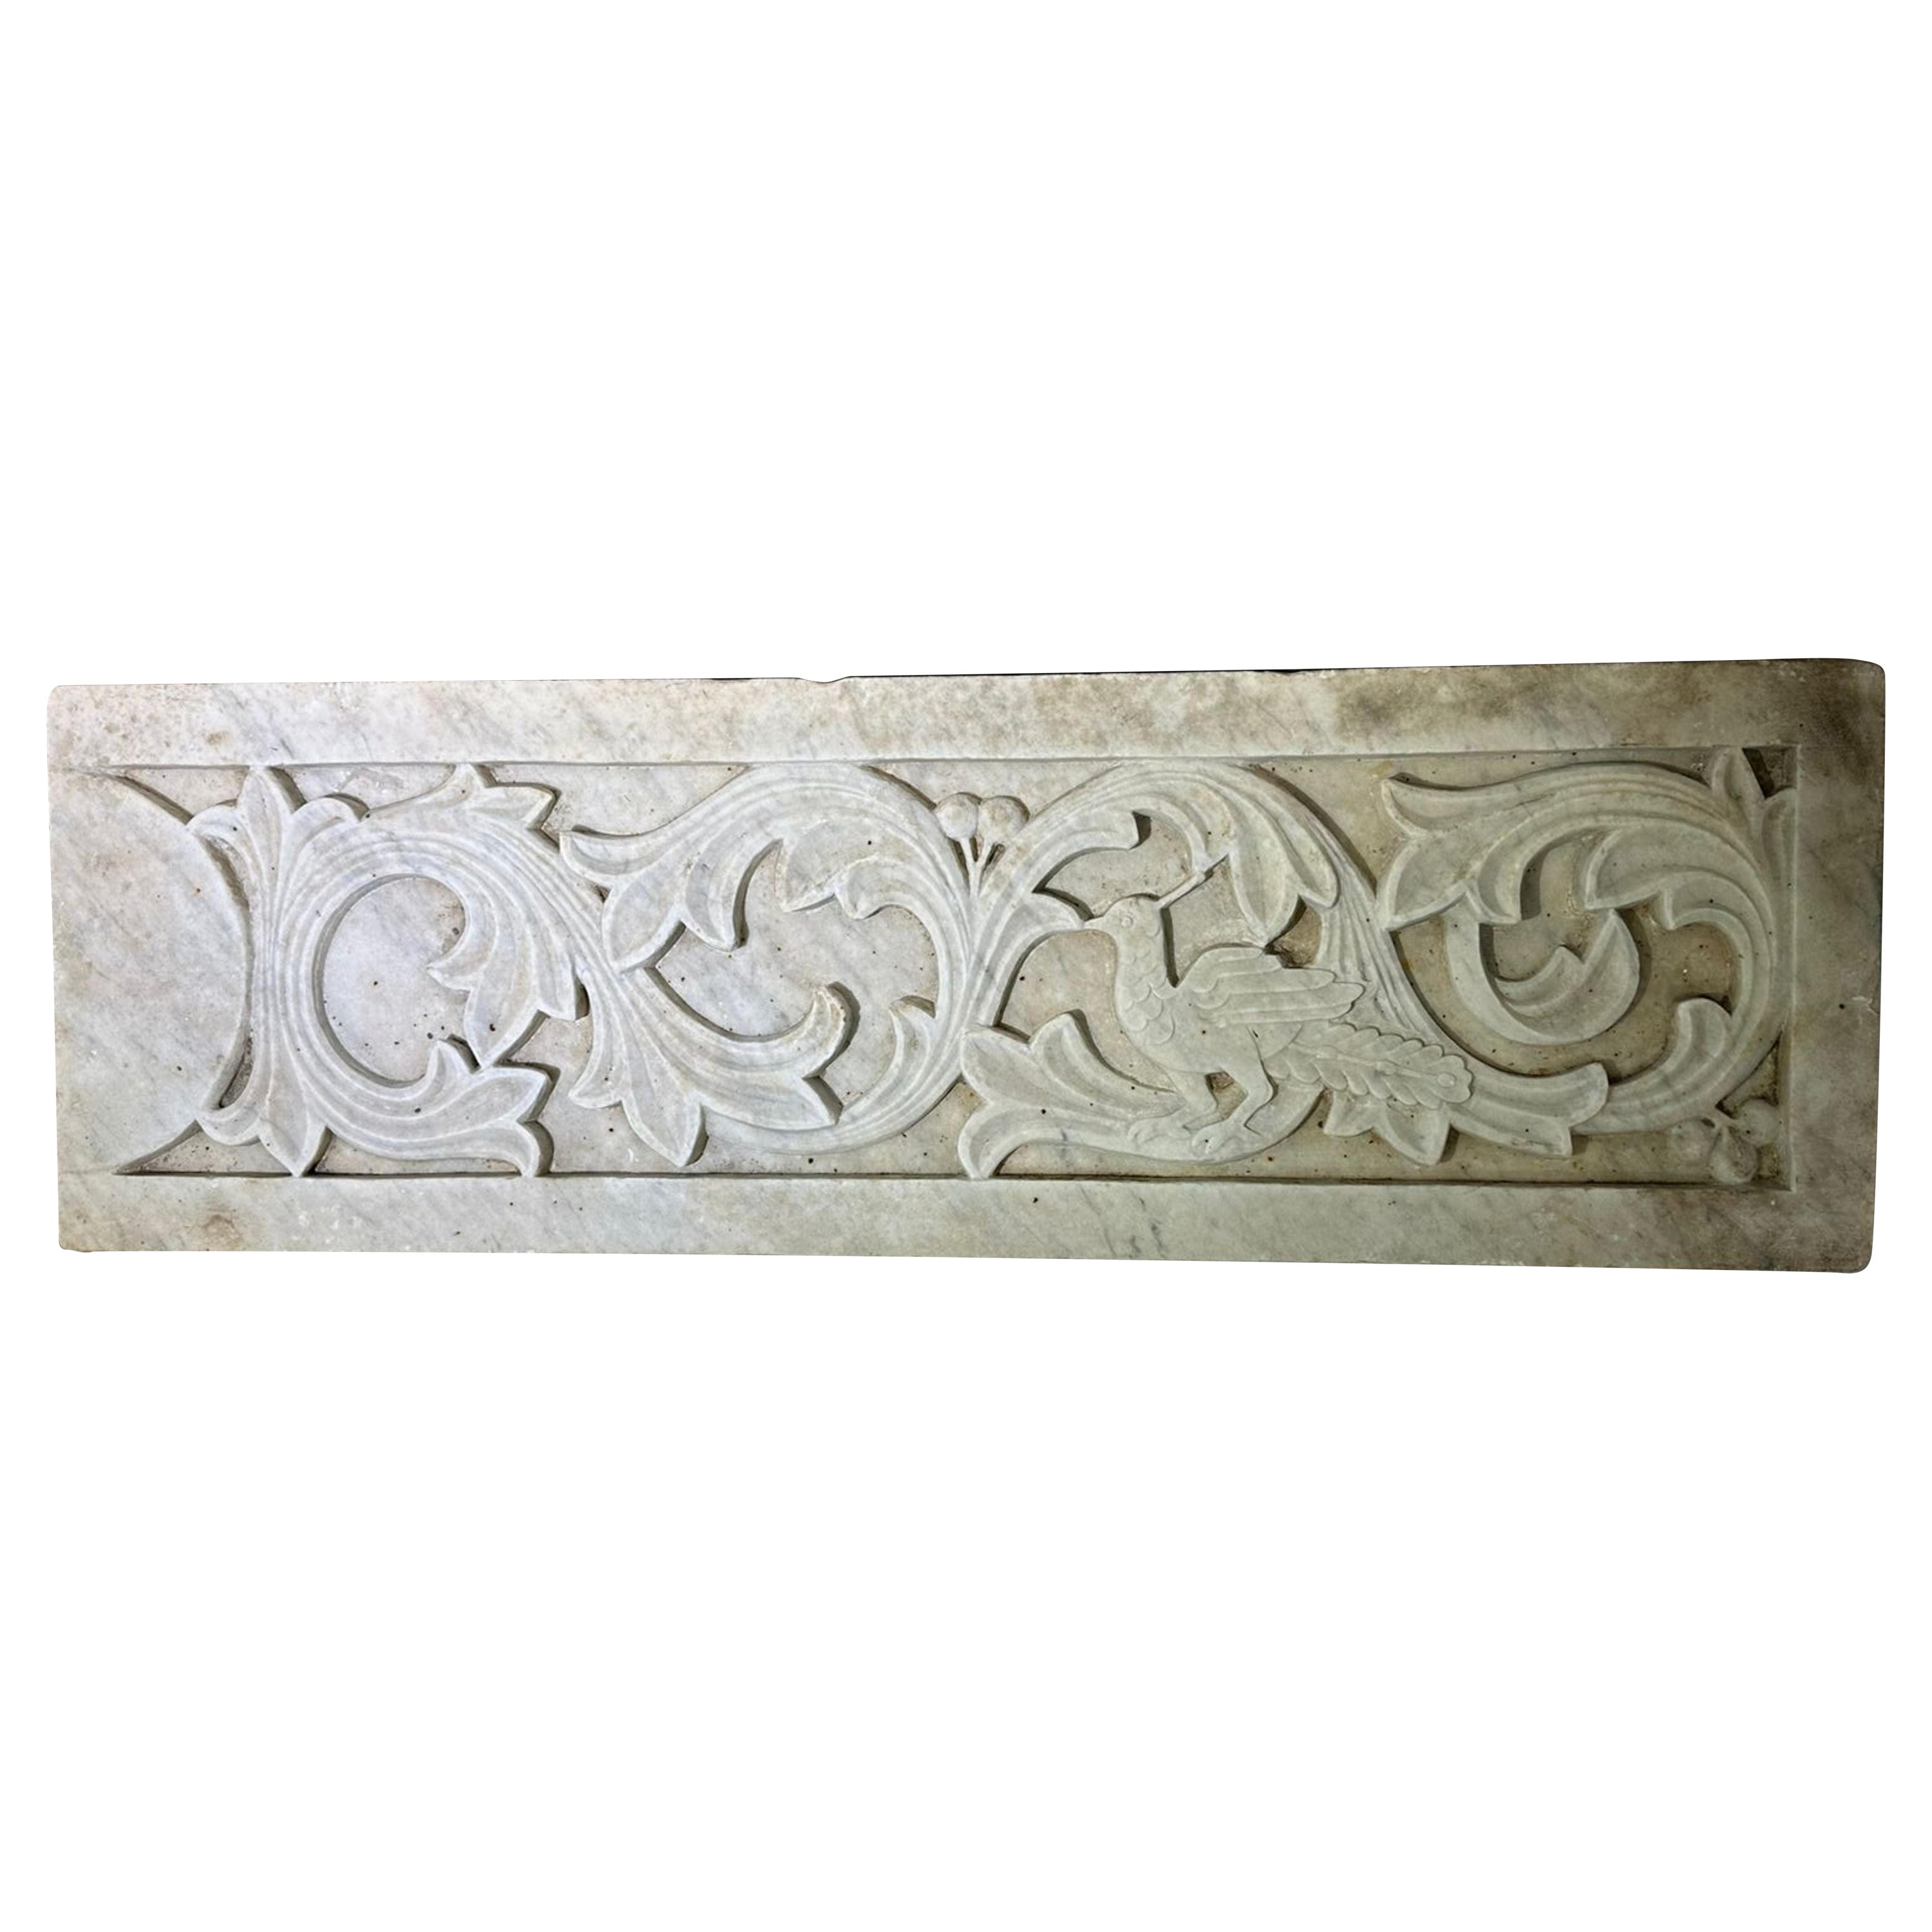 Italienisches Relief aus Carrara-Marmor Ende des 19.
Ursprünglicher Zustand
90cm x 29.5cm x 5cm
Mit Haken zum Aufhängen an der Wand